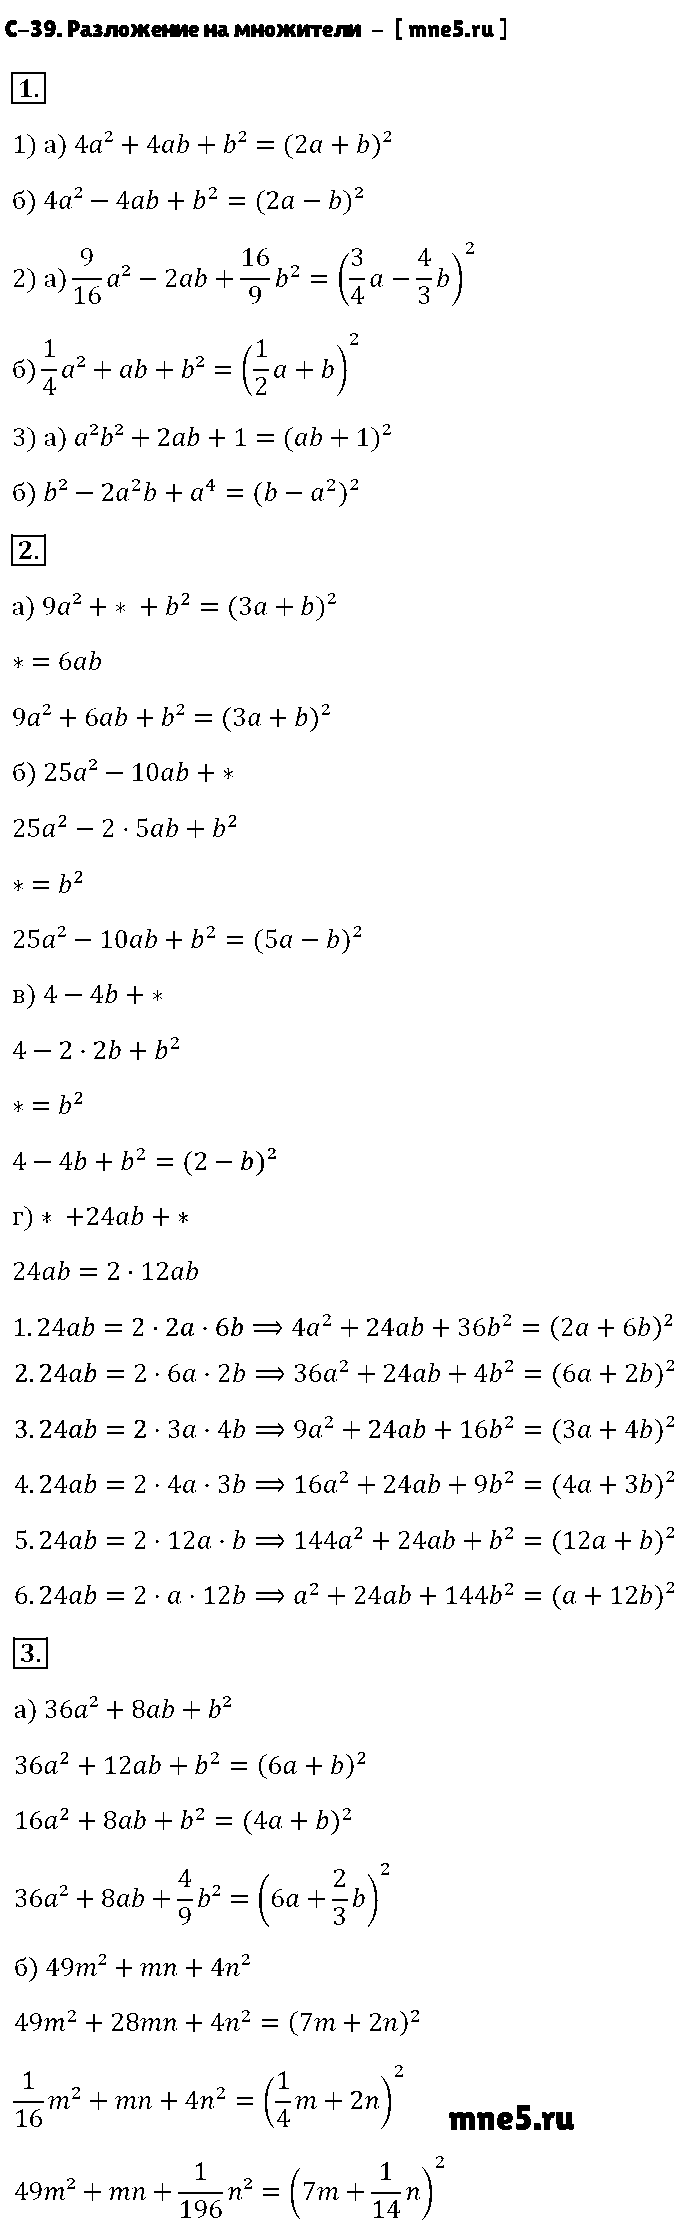 ГДЗ Алгебра 7 класс - С-39. Разложение на множители